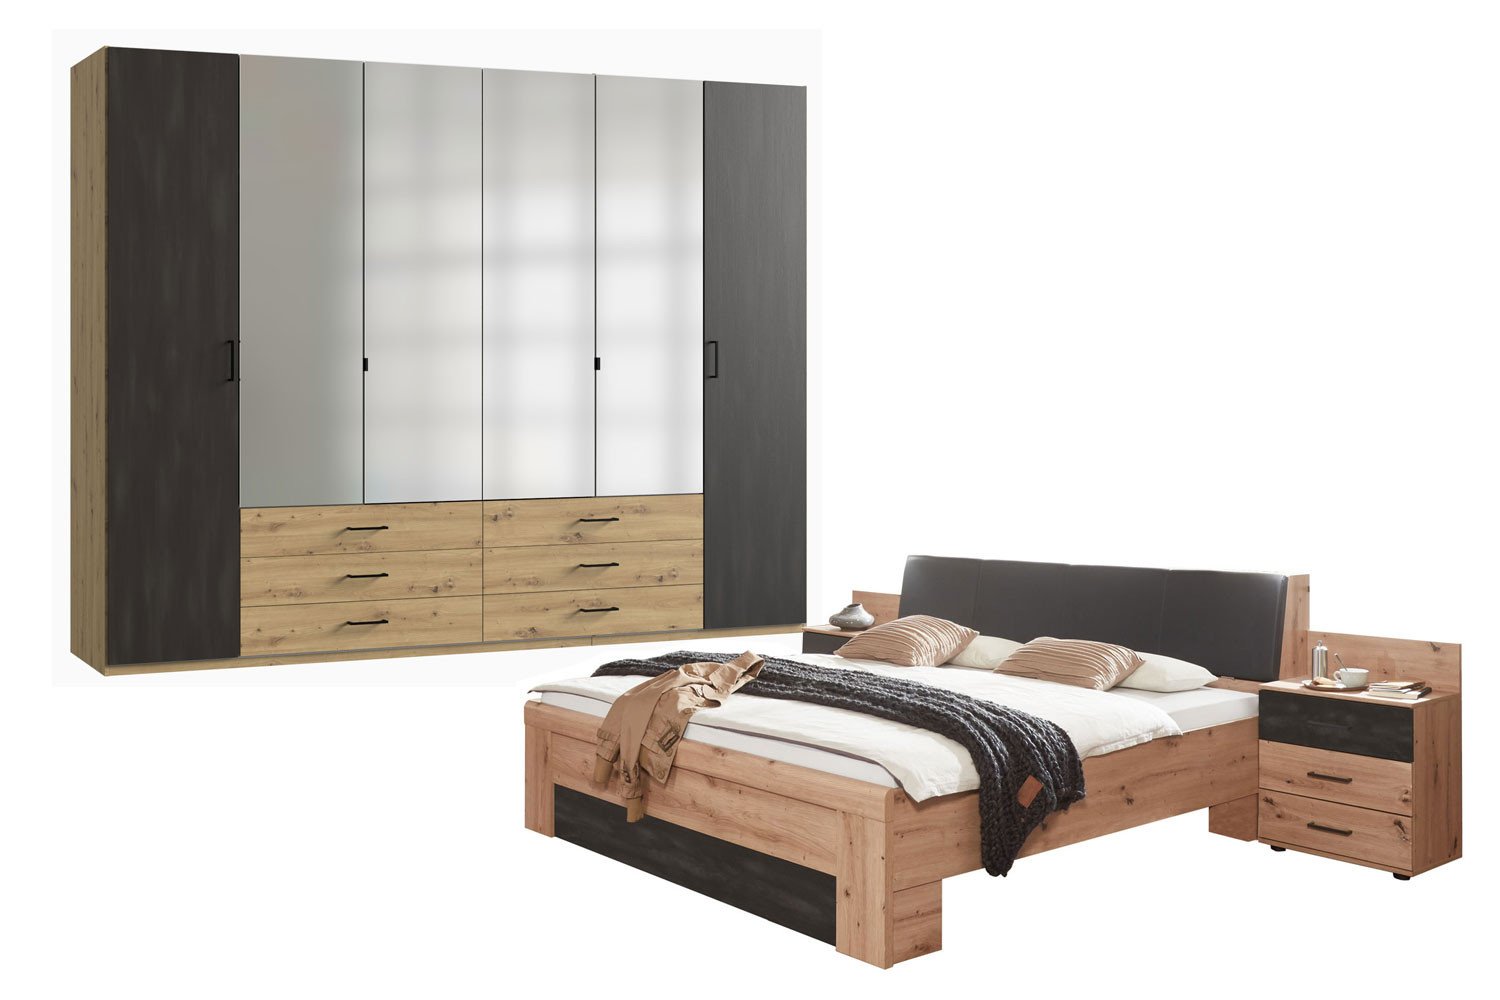 Wimex Schlafzimmer Sulzbach in Artisan-Eiche | Möbel Letz - Ihr Online-Shop